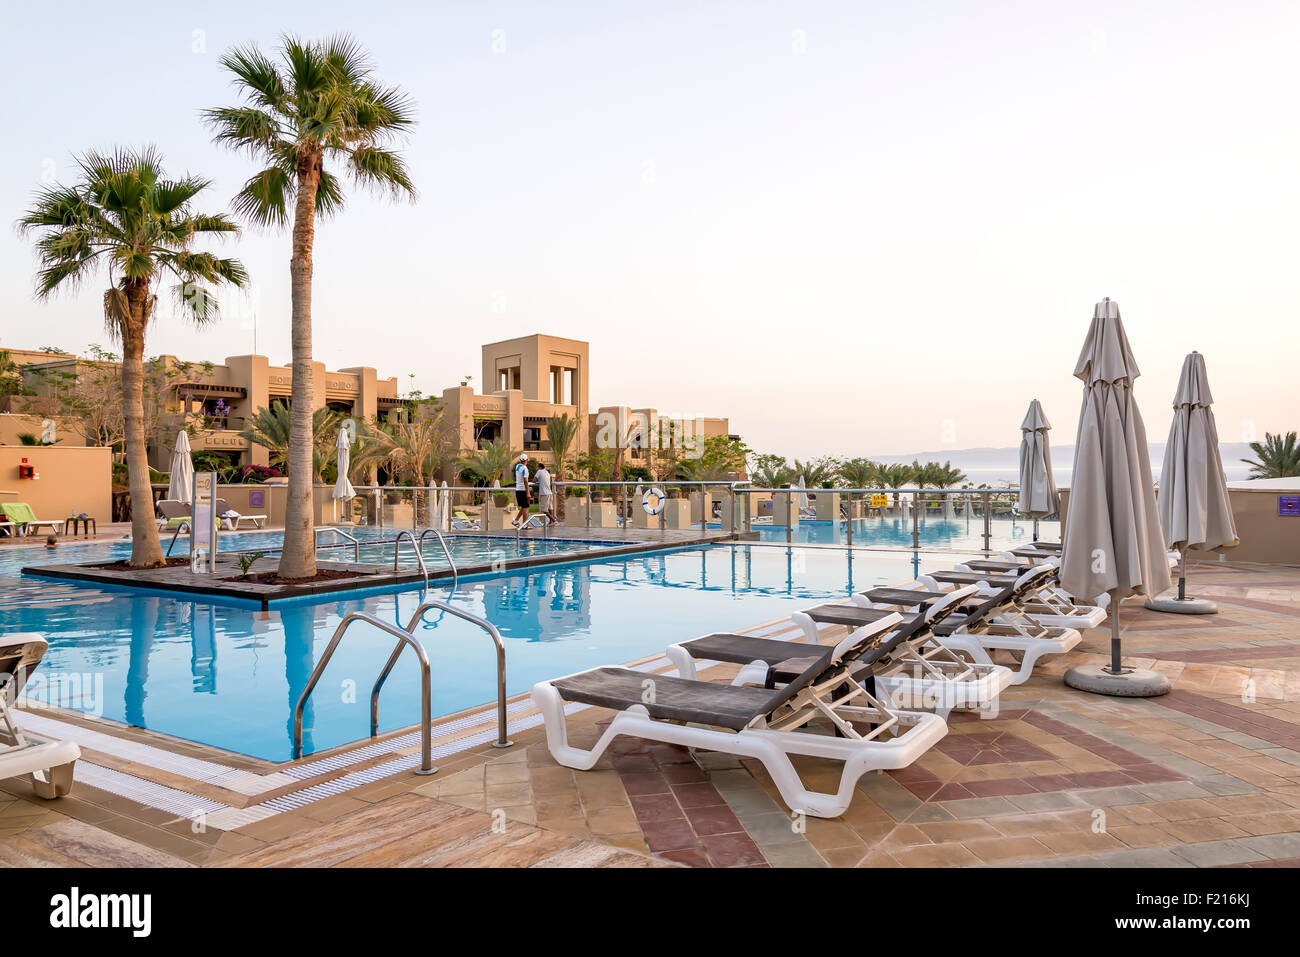 Vista de Holiday Inn Resort Mar Muerto piscina. Ubicado en la playa, este resort está a 25 km del Monte Nebo, en Jordania Foto de stock